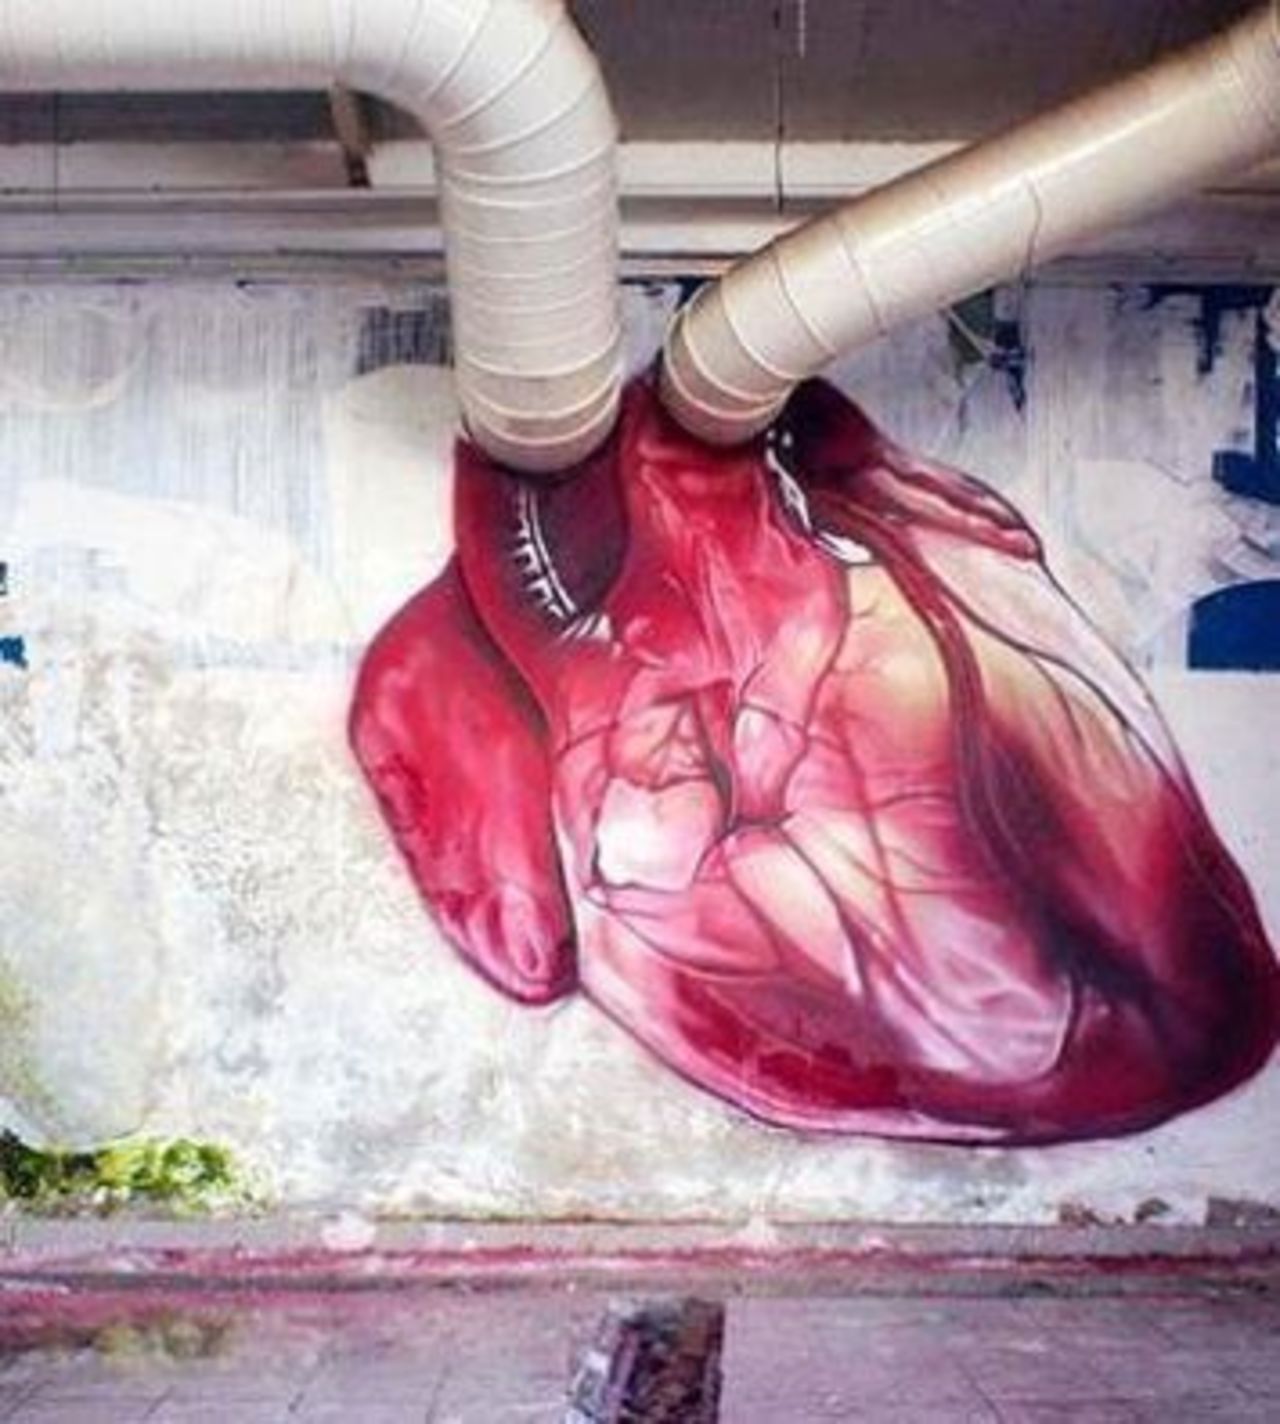 #Heart – Creative #Streetart | Be ▲rtist - Be ▲rt https://beartistbeart.com/2016/08/22/heart-creative-streetart/?utm_campaign=crowdfire&utm_content=crowdfire&utm_medium=social&utm_source=twitter https://t.co/xn4qJWTRio